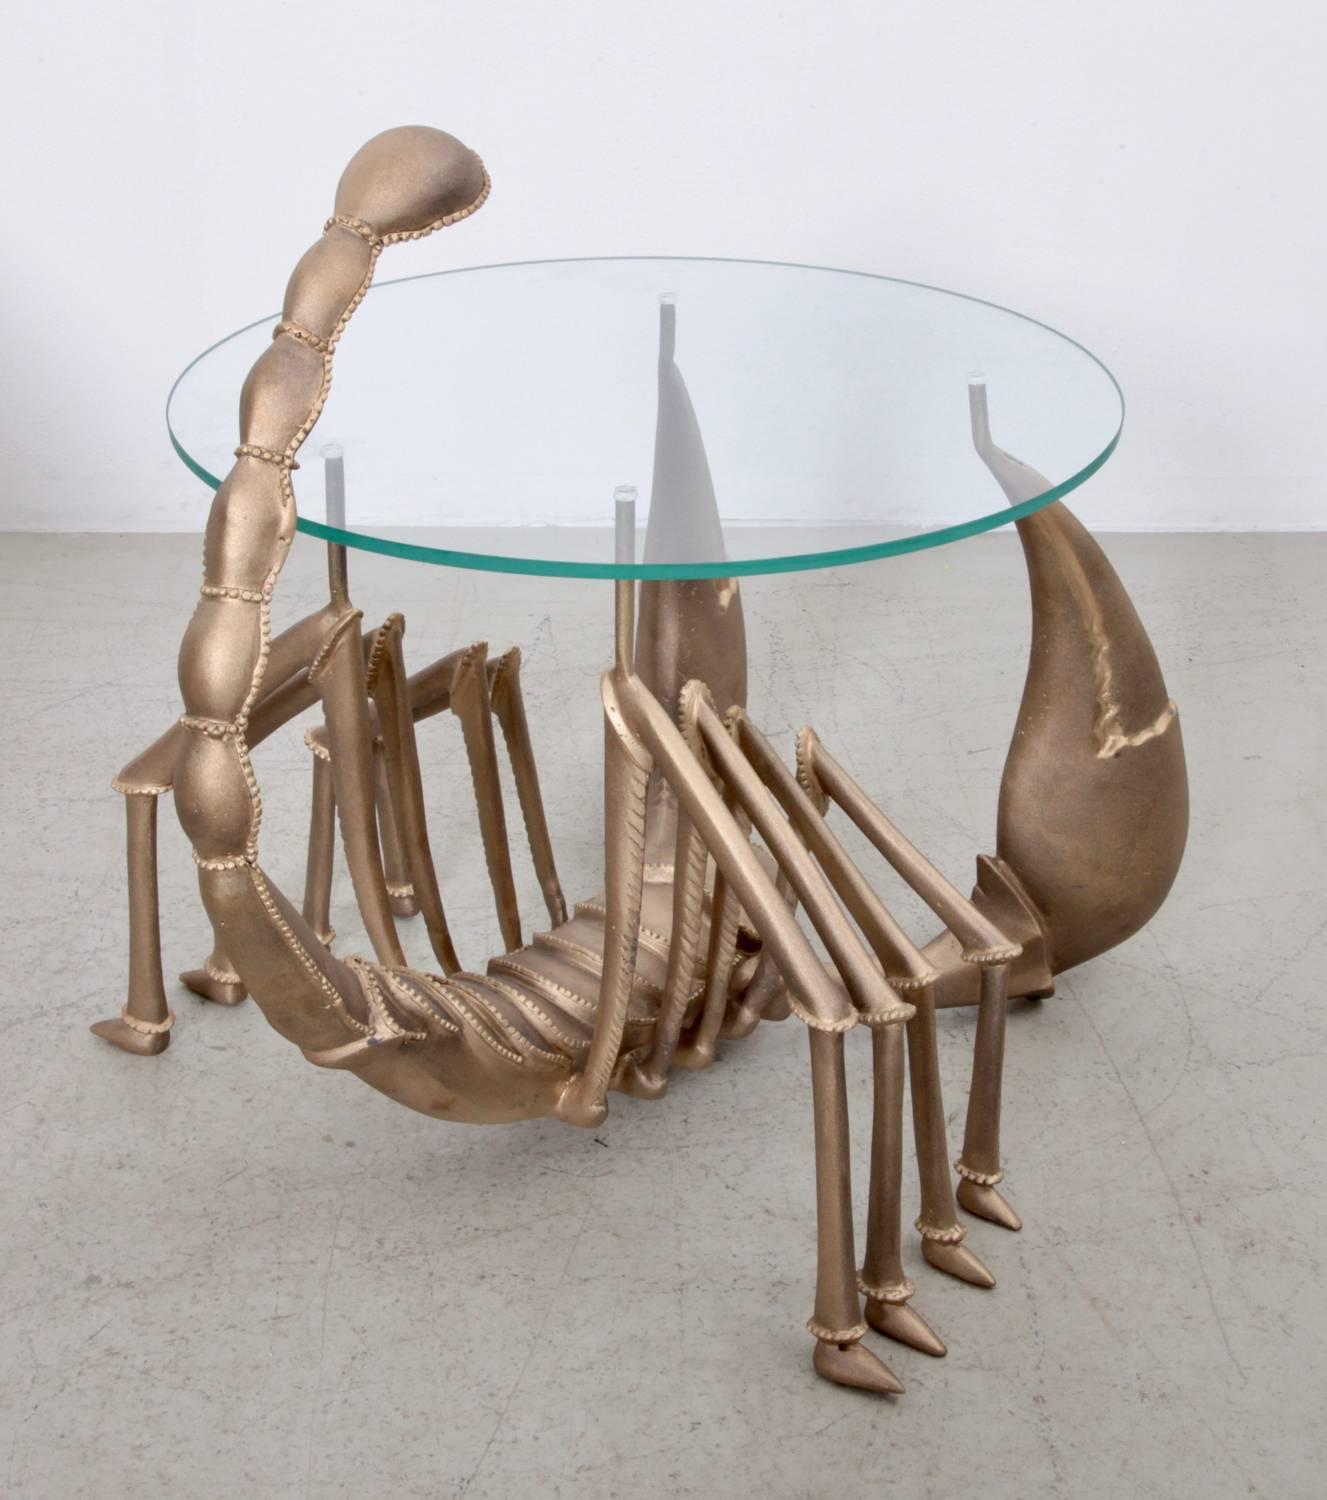 Très rare table basse ou d'appoint en laiton attribuée à Jacques Duval-Brasseur dans les années 1970. La table est en laiton et comporte une plaque de verre. La table est une sculpture d'ascorpion. Une des rares tables de ce type jamais produites.